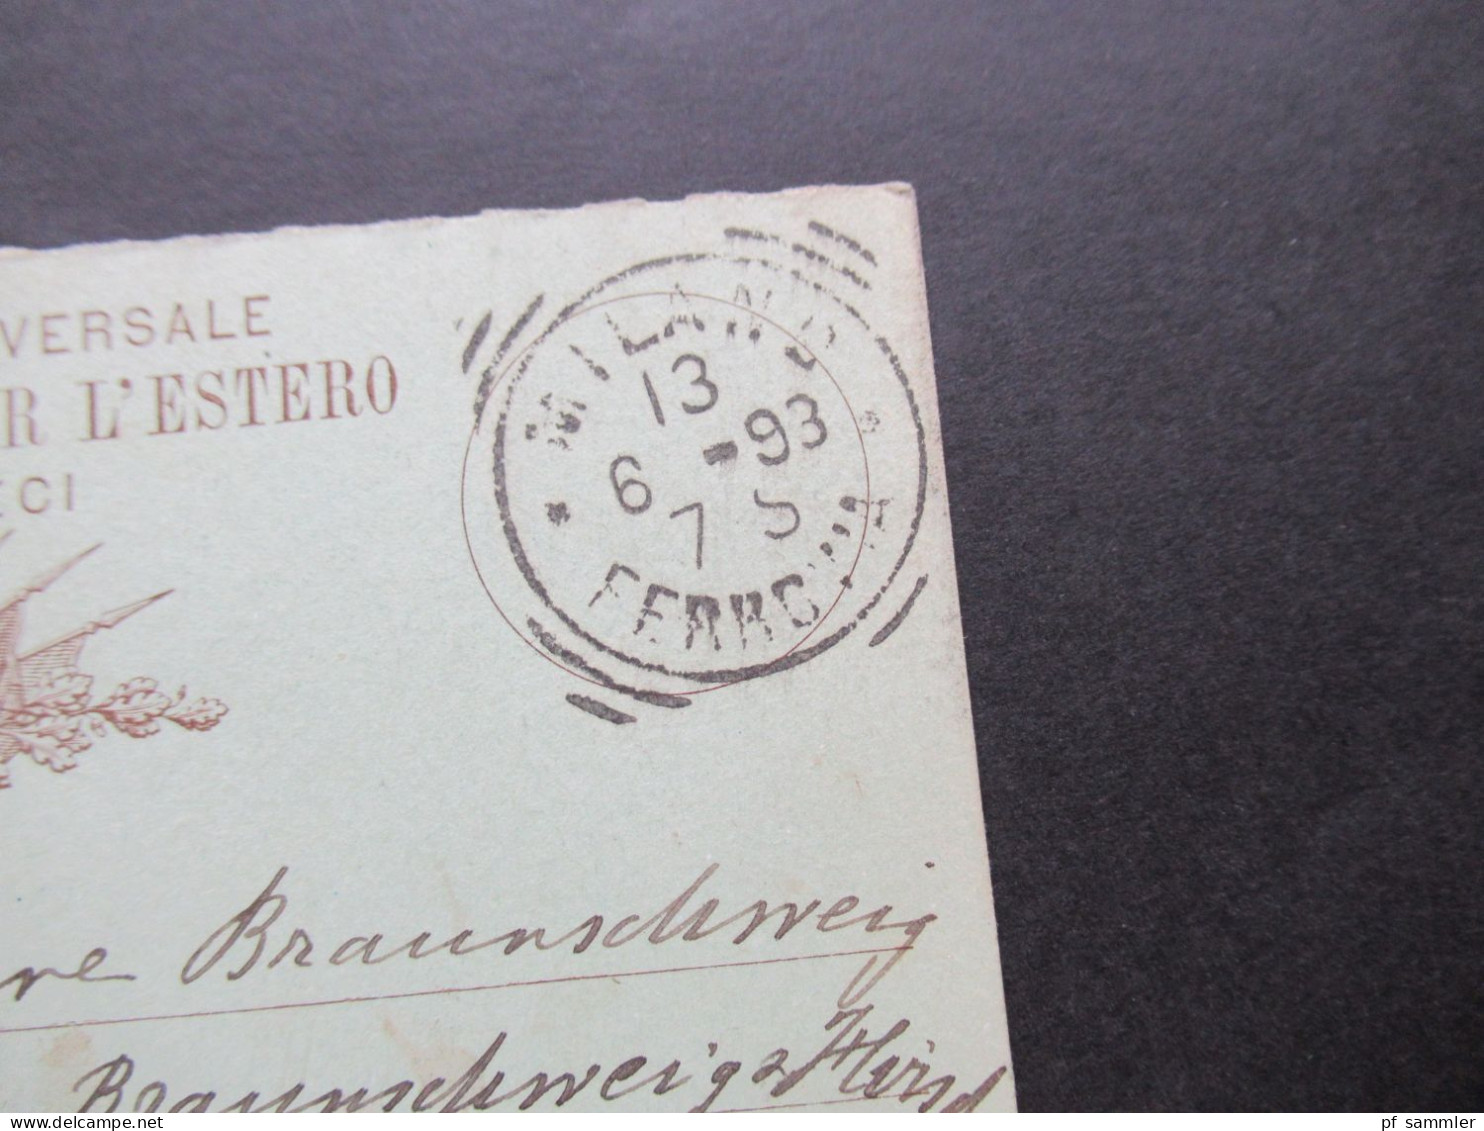 Italien 1893 Ganzsache Doppelkarte Auslands PK In Die Schweiz Innen Blauer Stempel Braunschweig Chaux De Fonds - Interi Postali